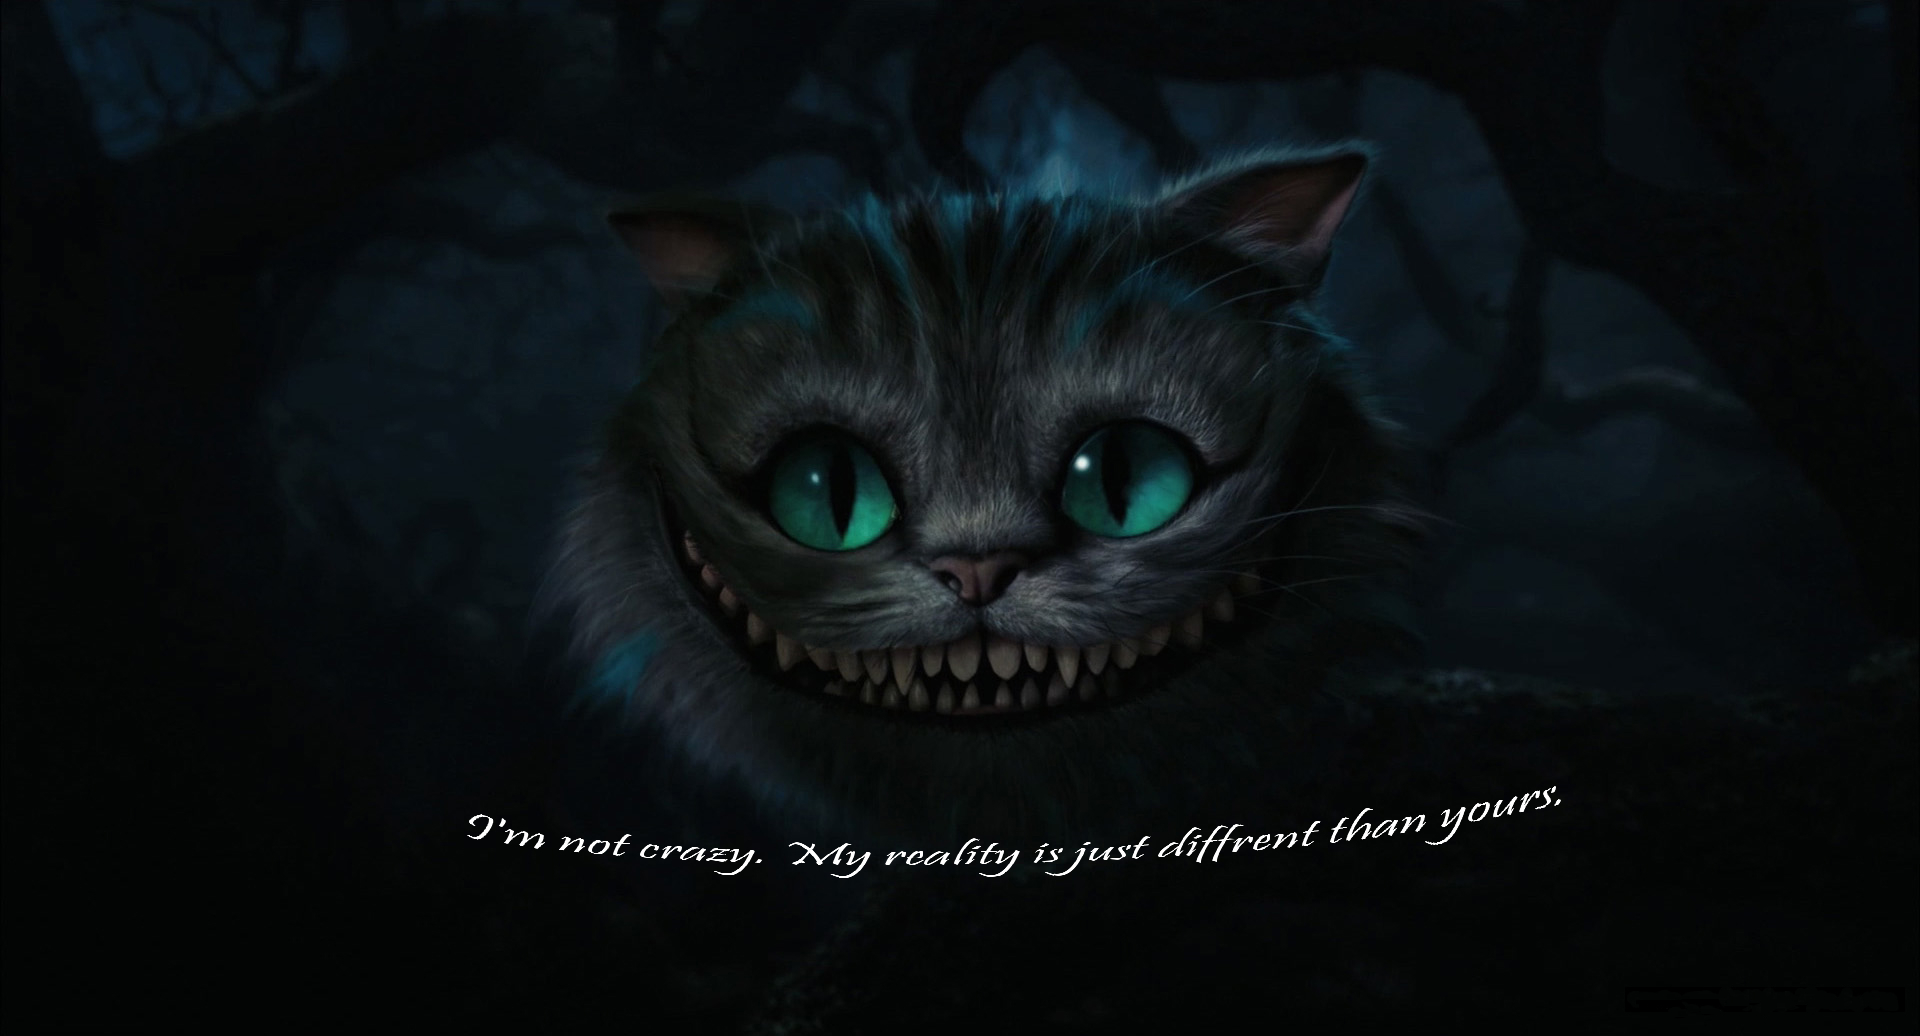 [45+] Cheshire Cat Wallpaper for Laptop | WallpaperSafari.com